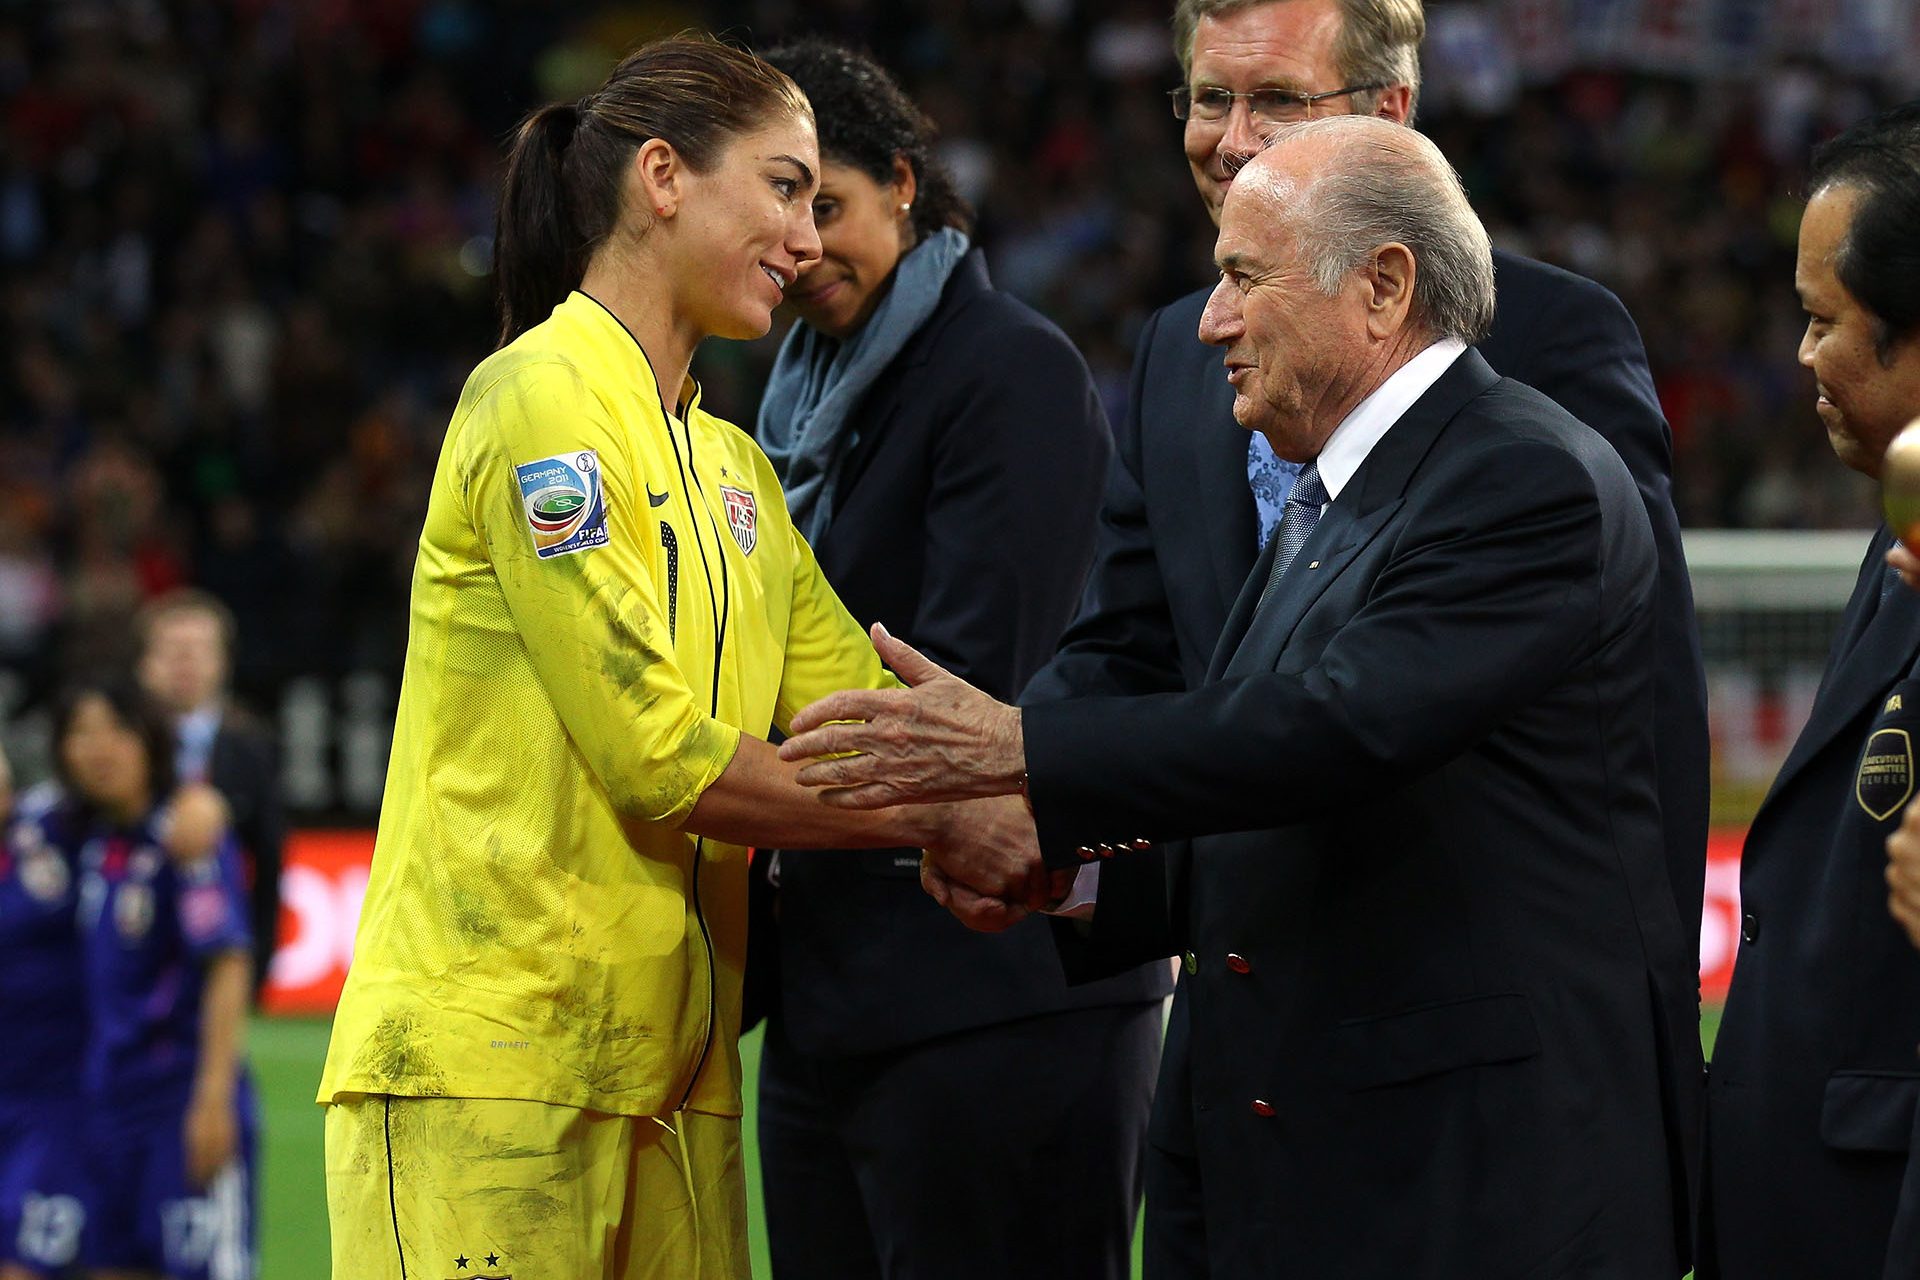 El ex presidente de la FIFA le ‘agarró el trasero’